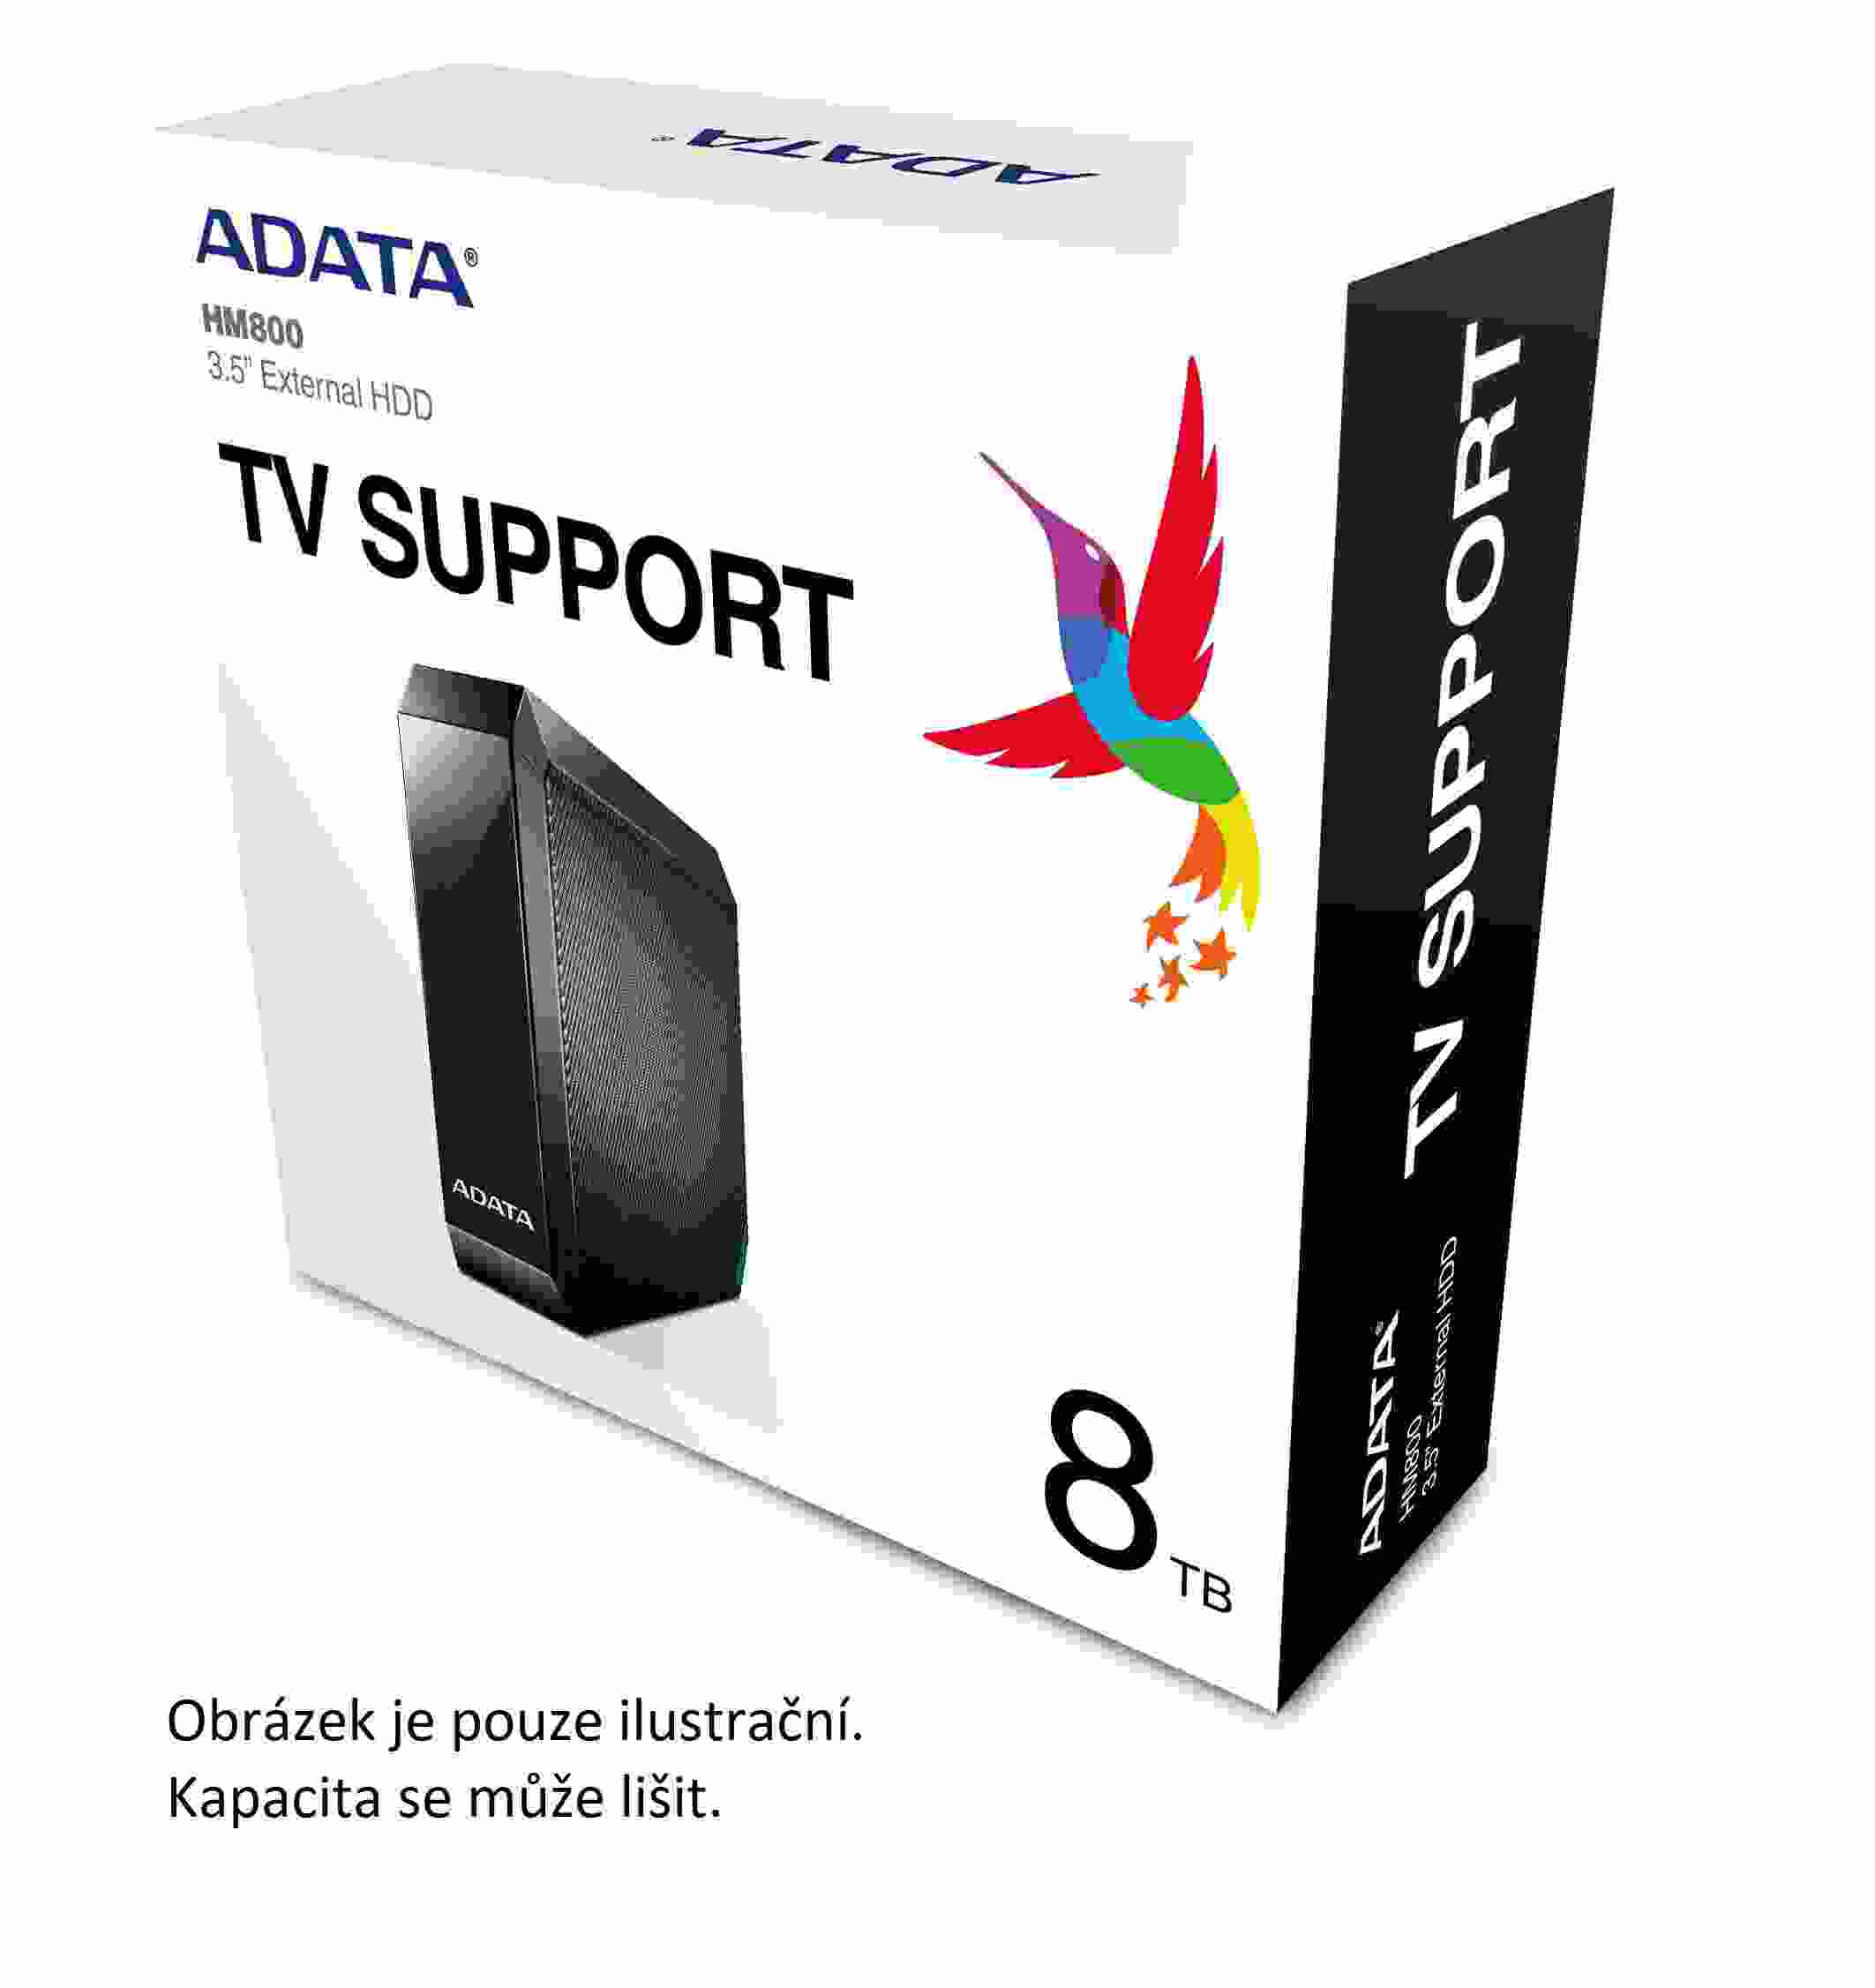 Externý pevný disk ADATA 8 TB 3.5